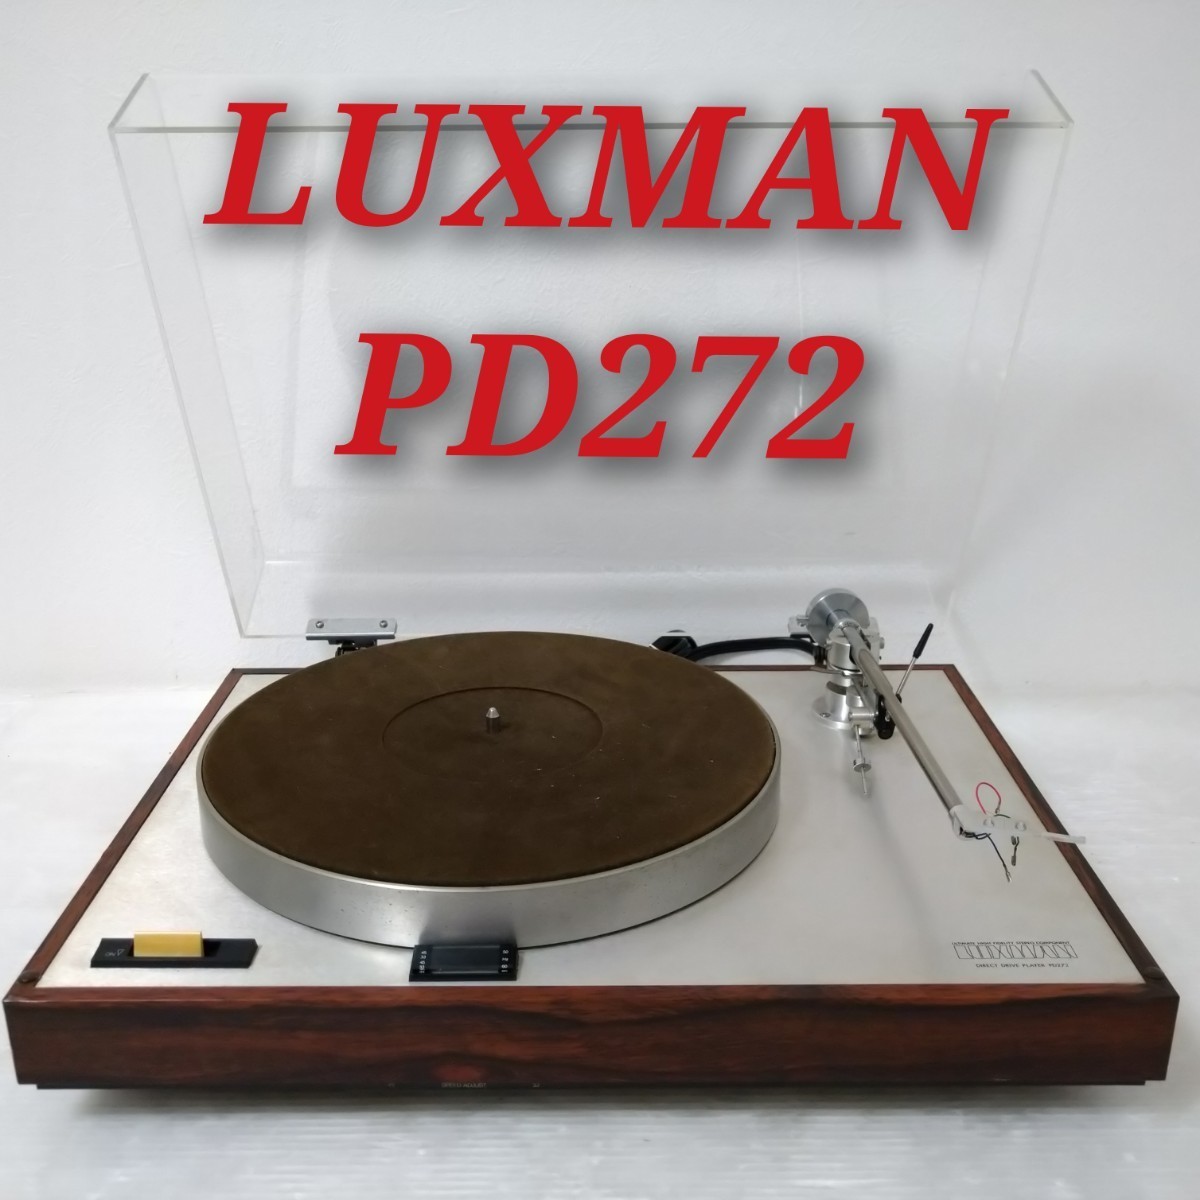 LUXMAN PD272 ラックスマン ダイレクト ドライブ ターンテーブル